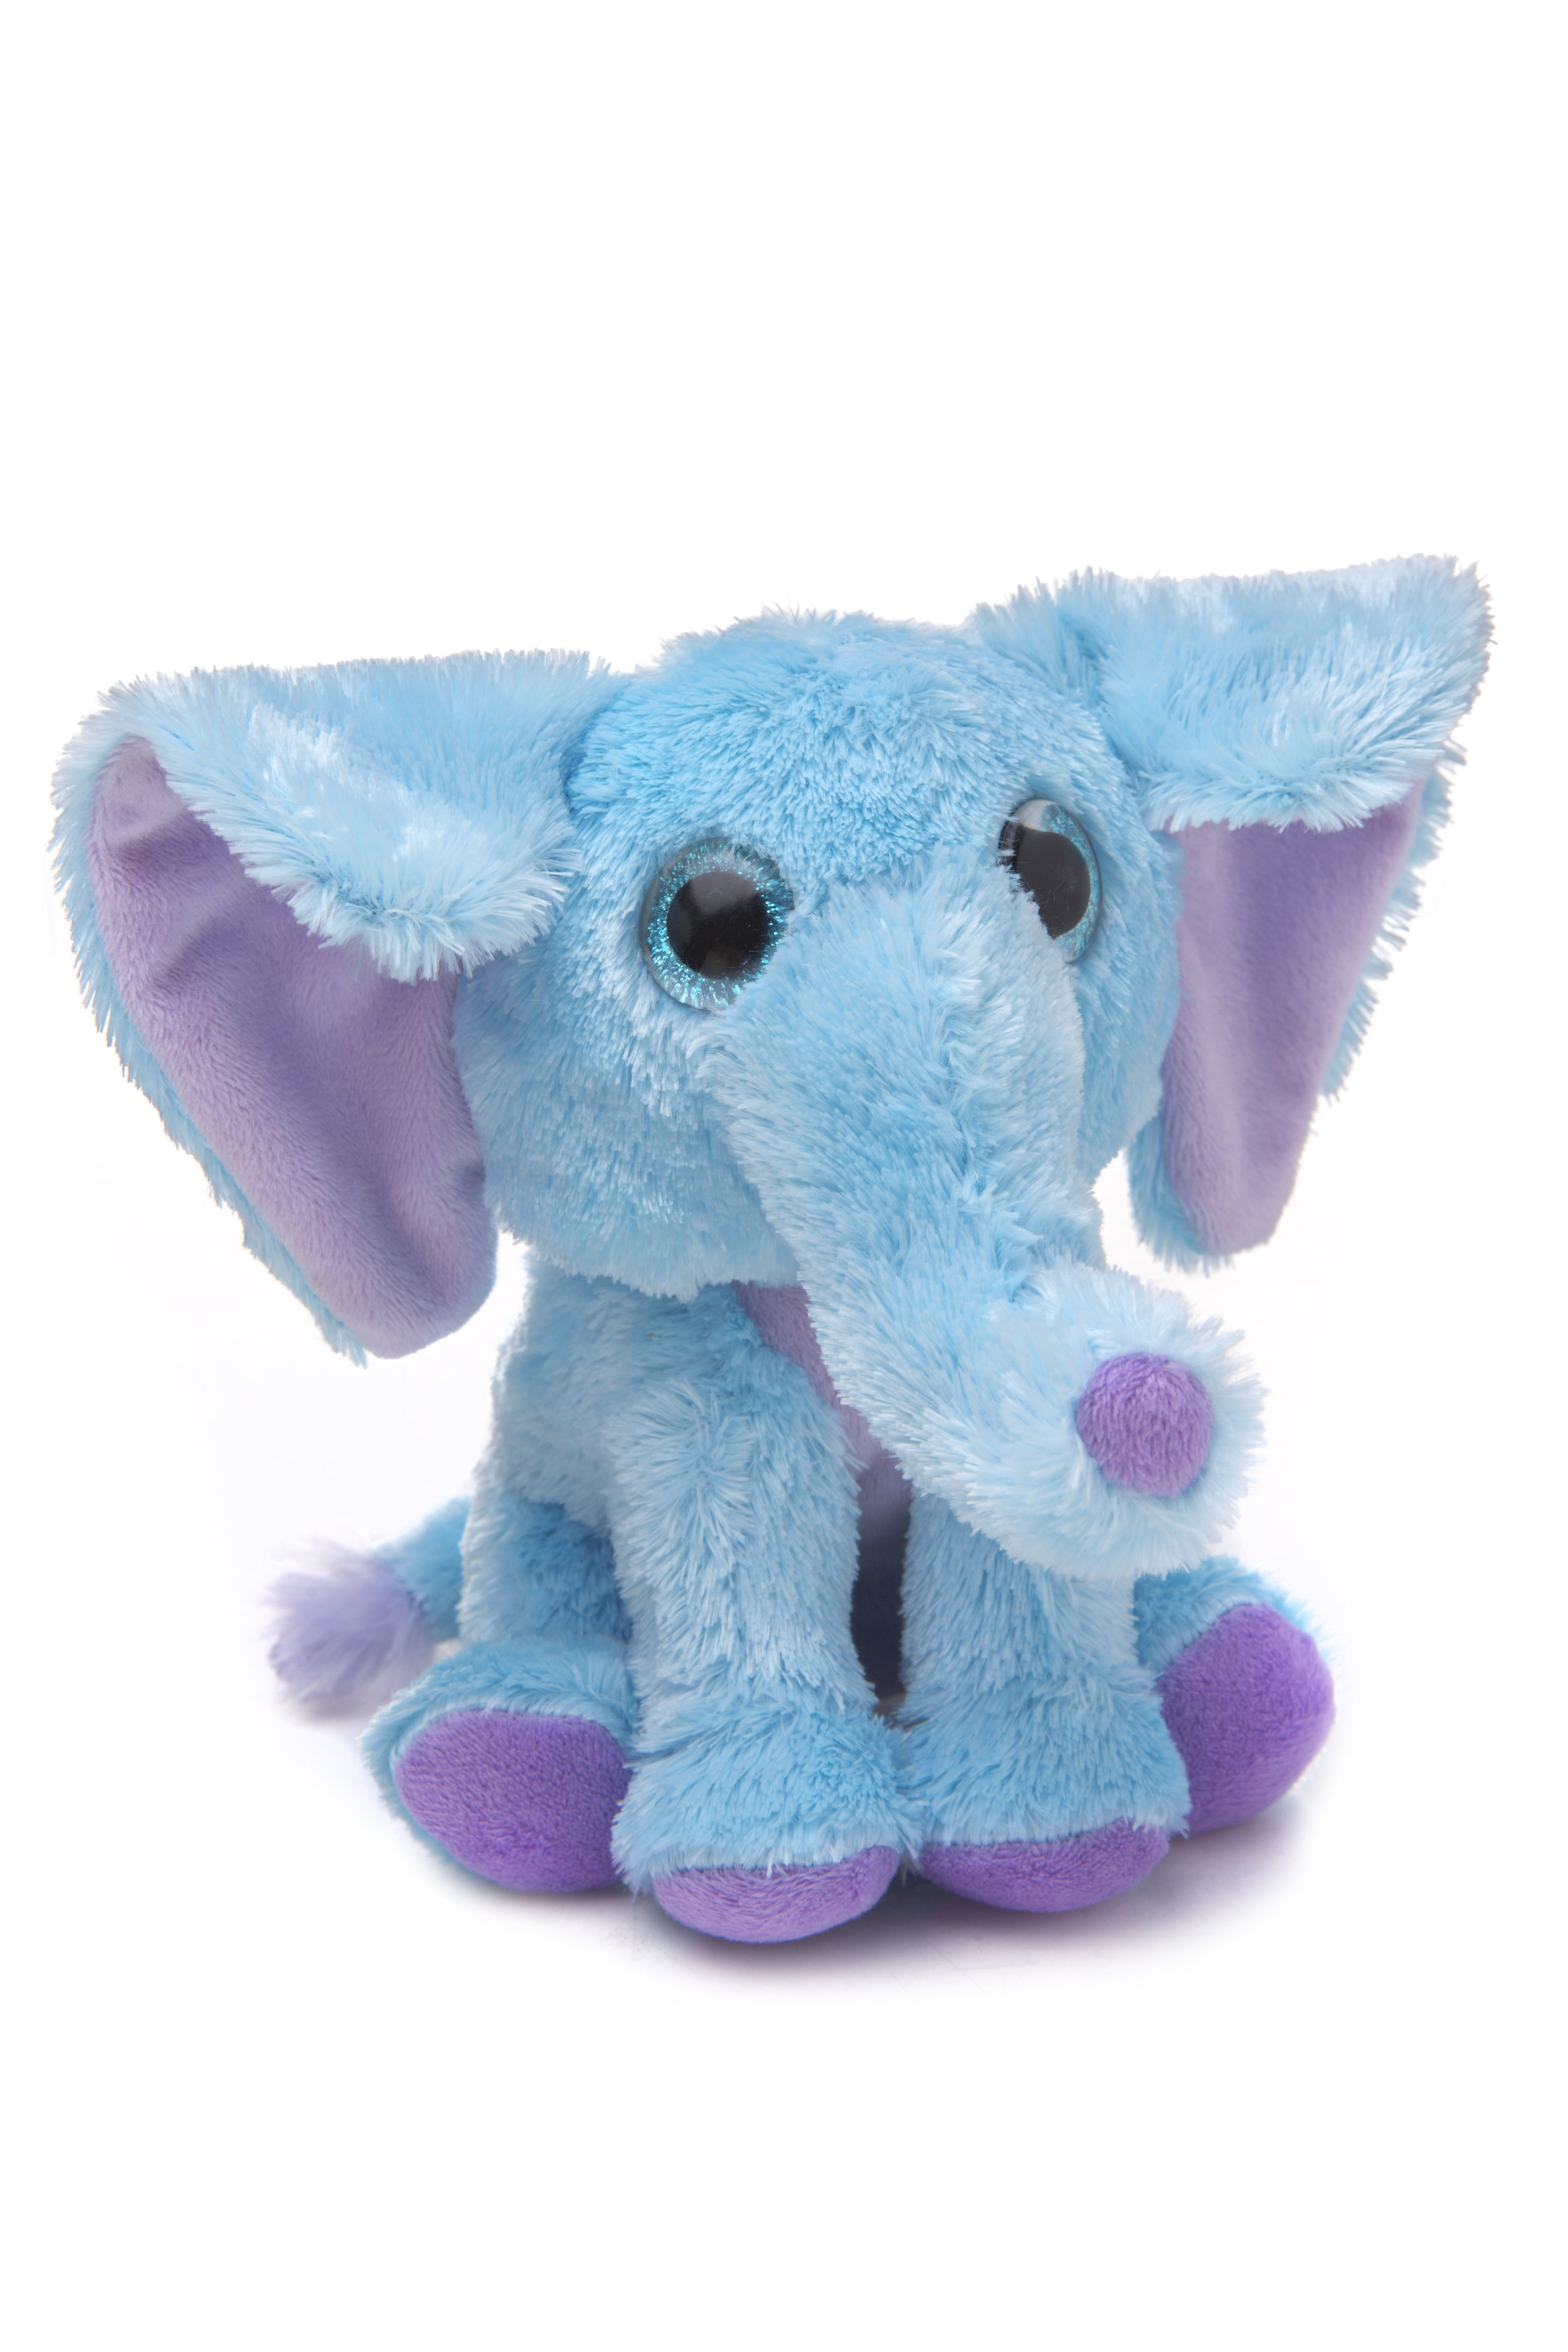 Winkeez Elephant Plush EMILY THE ELEPHANT Blue & Lavender Blue Eyes Toy 7" NWT 